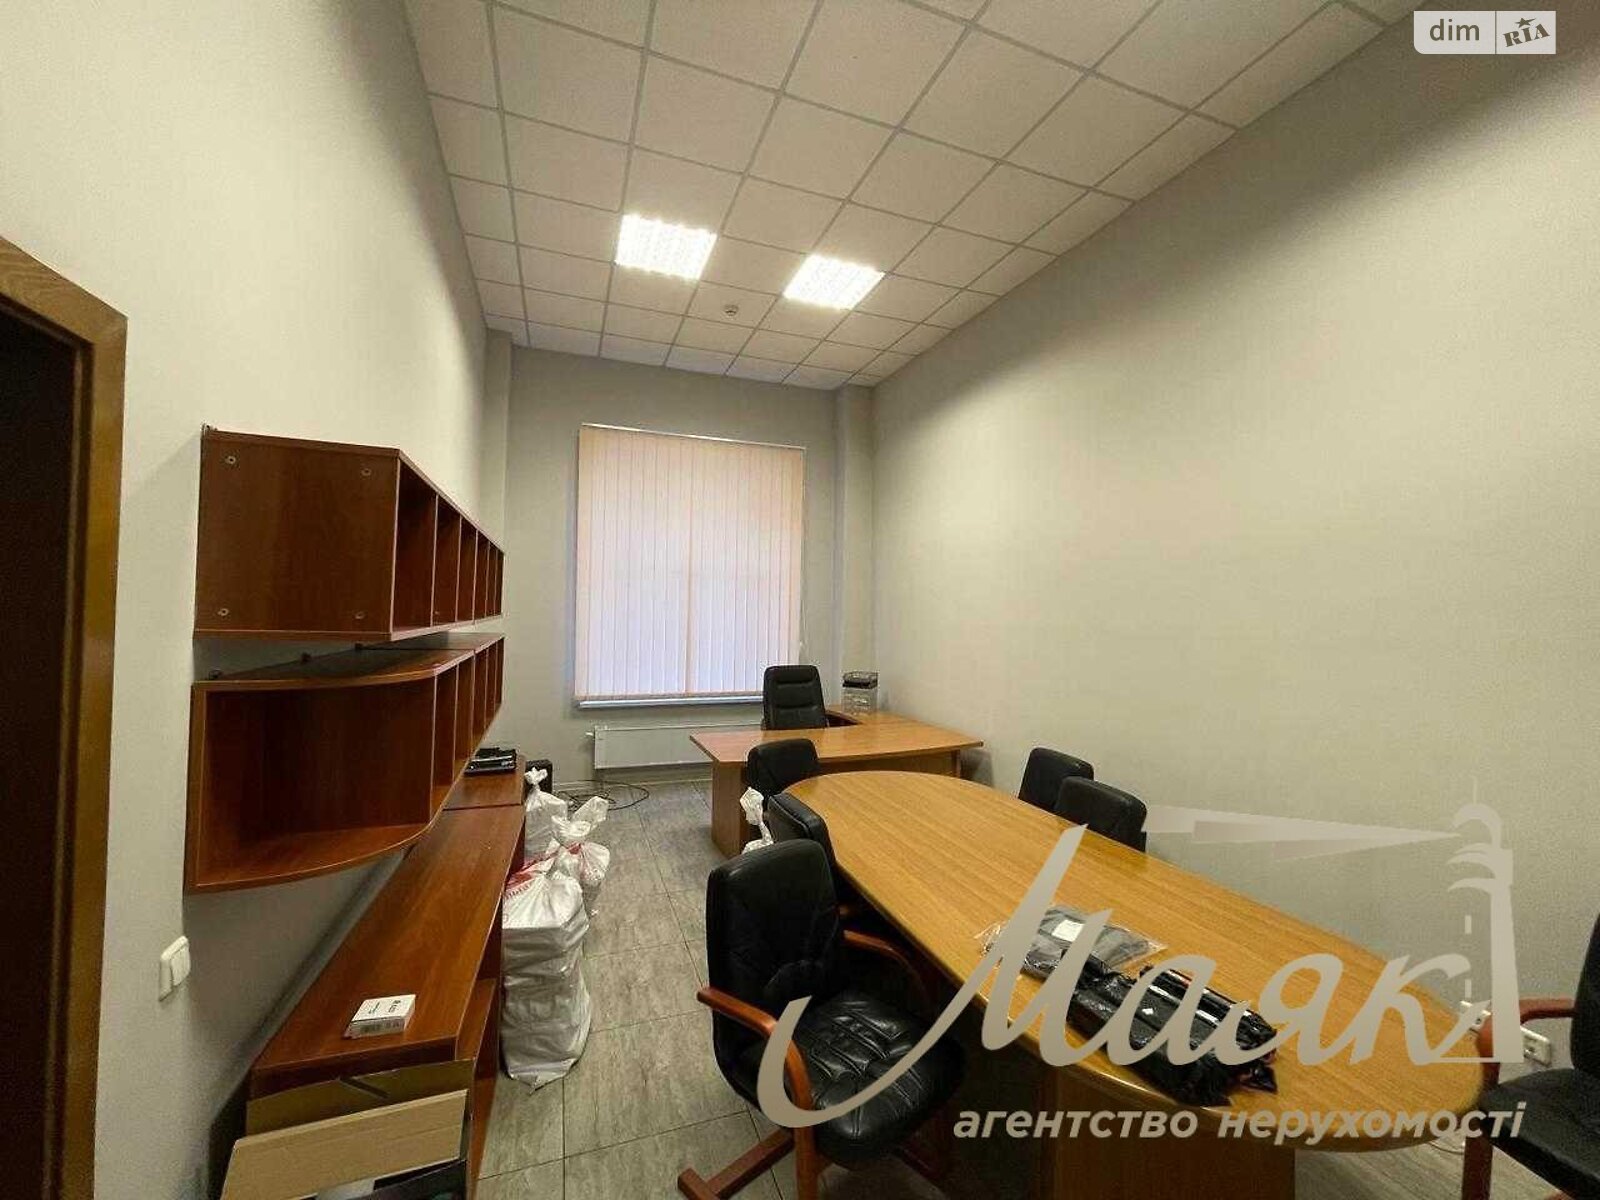 Аренда офисного помещения в Киеве, Волошская улица 50/38, помещений - 1, этаж - 1 фото 1